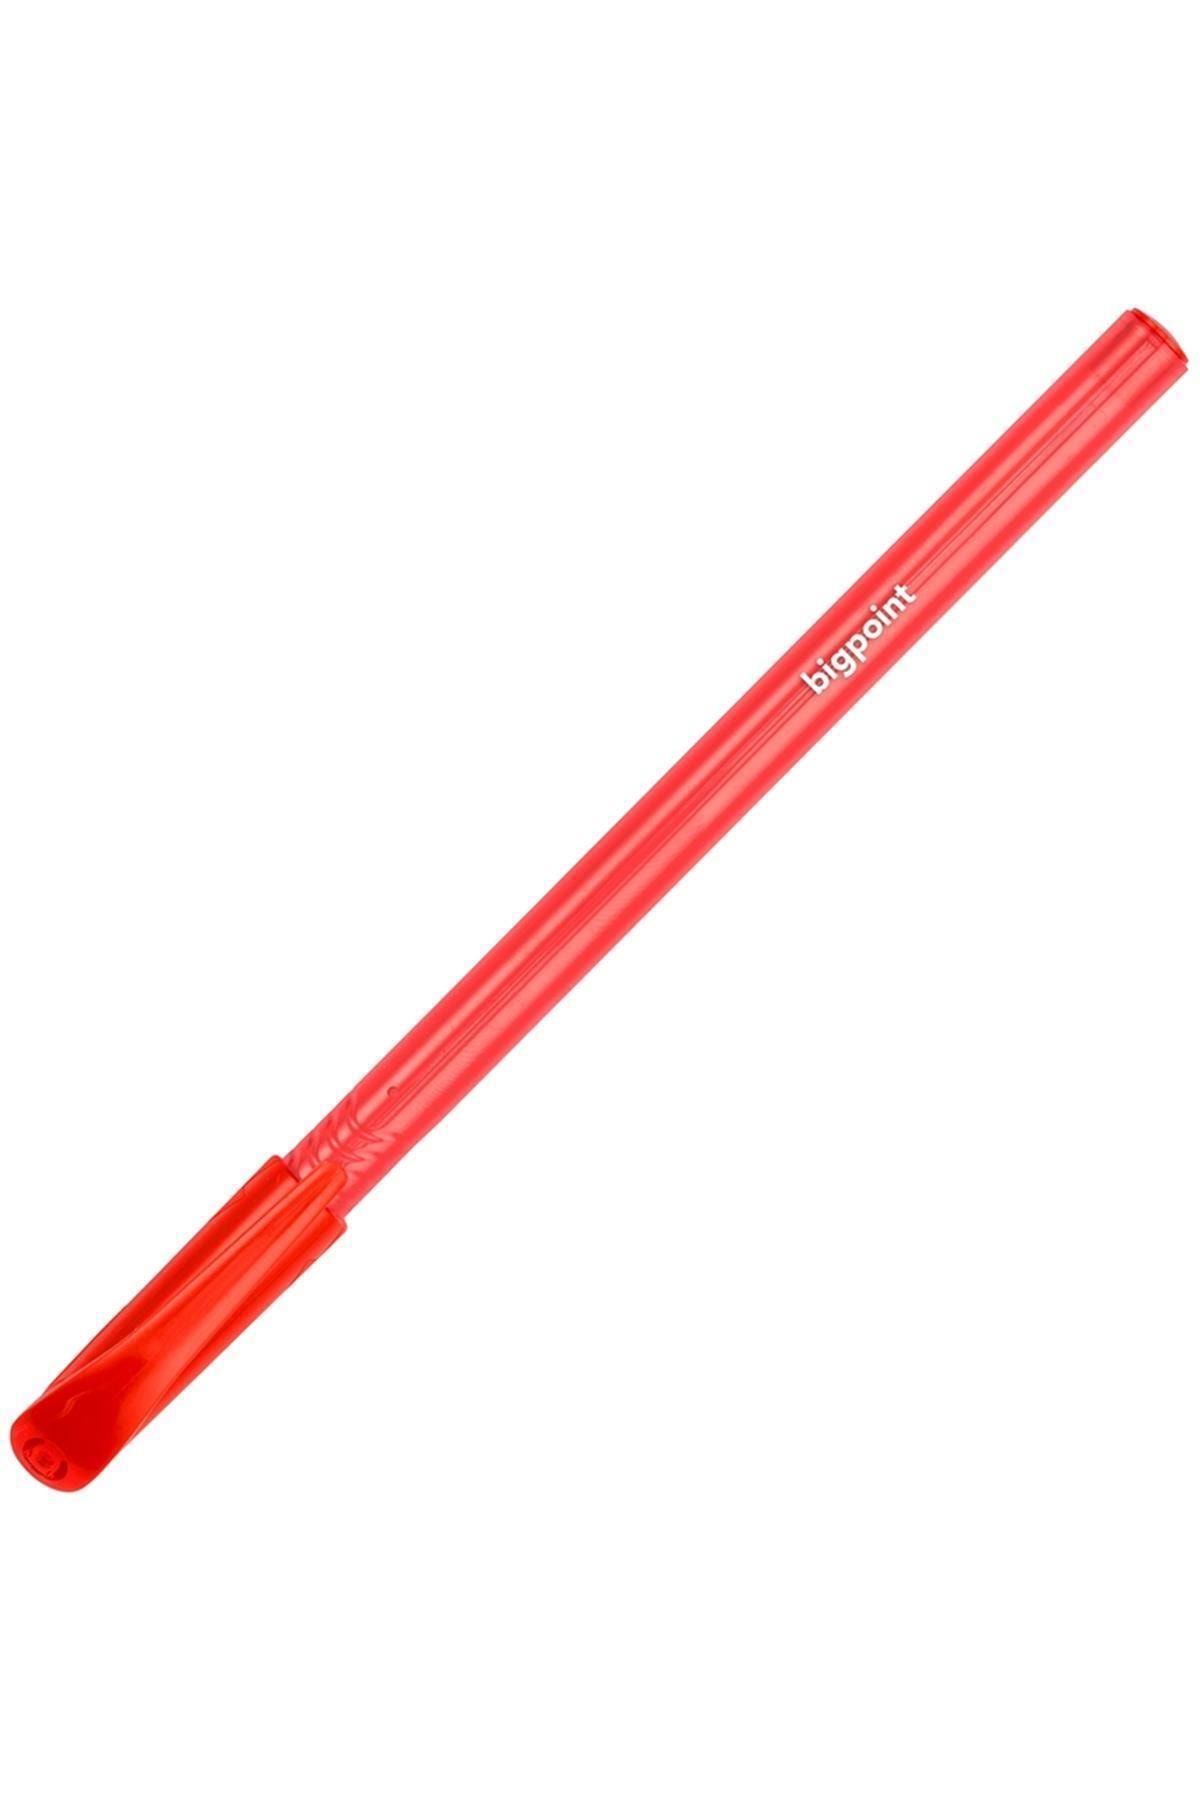 Bigpoint Tükenmez Kalem 1.0 Kırmızı Master 933